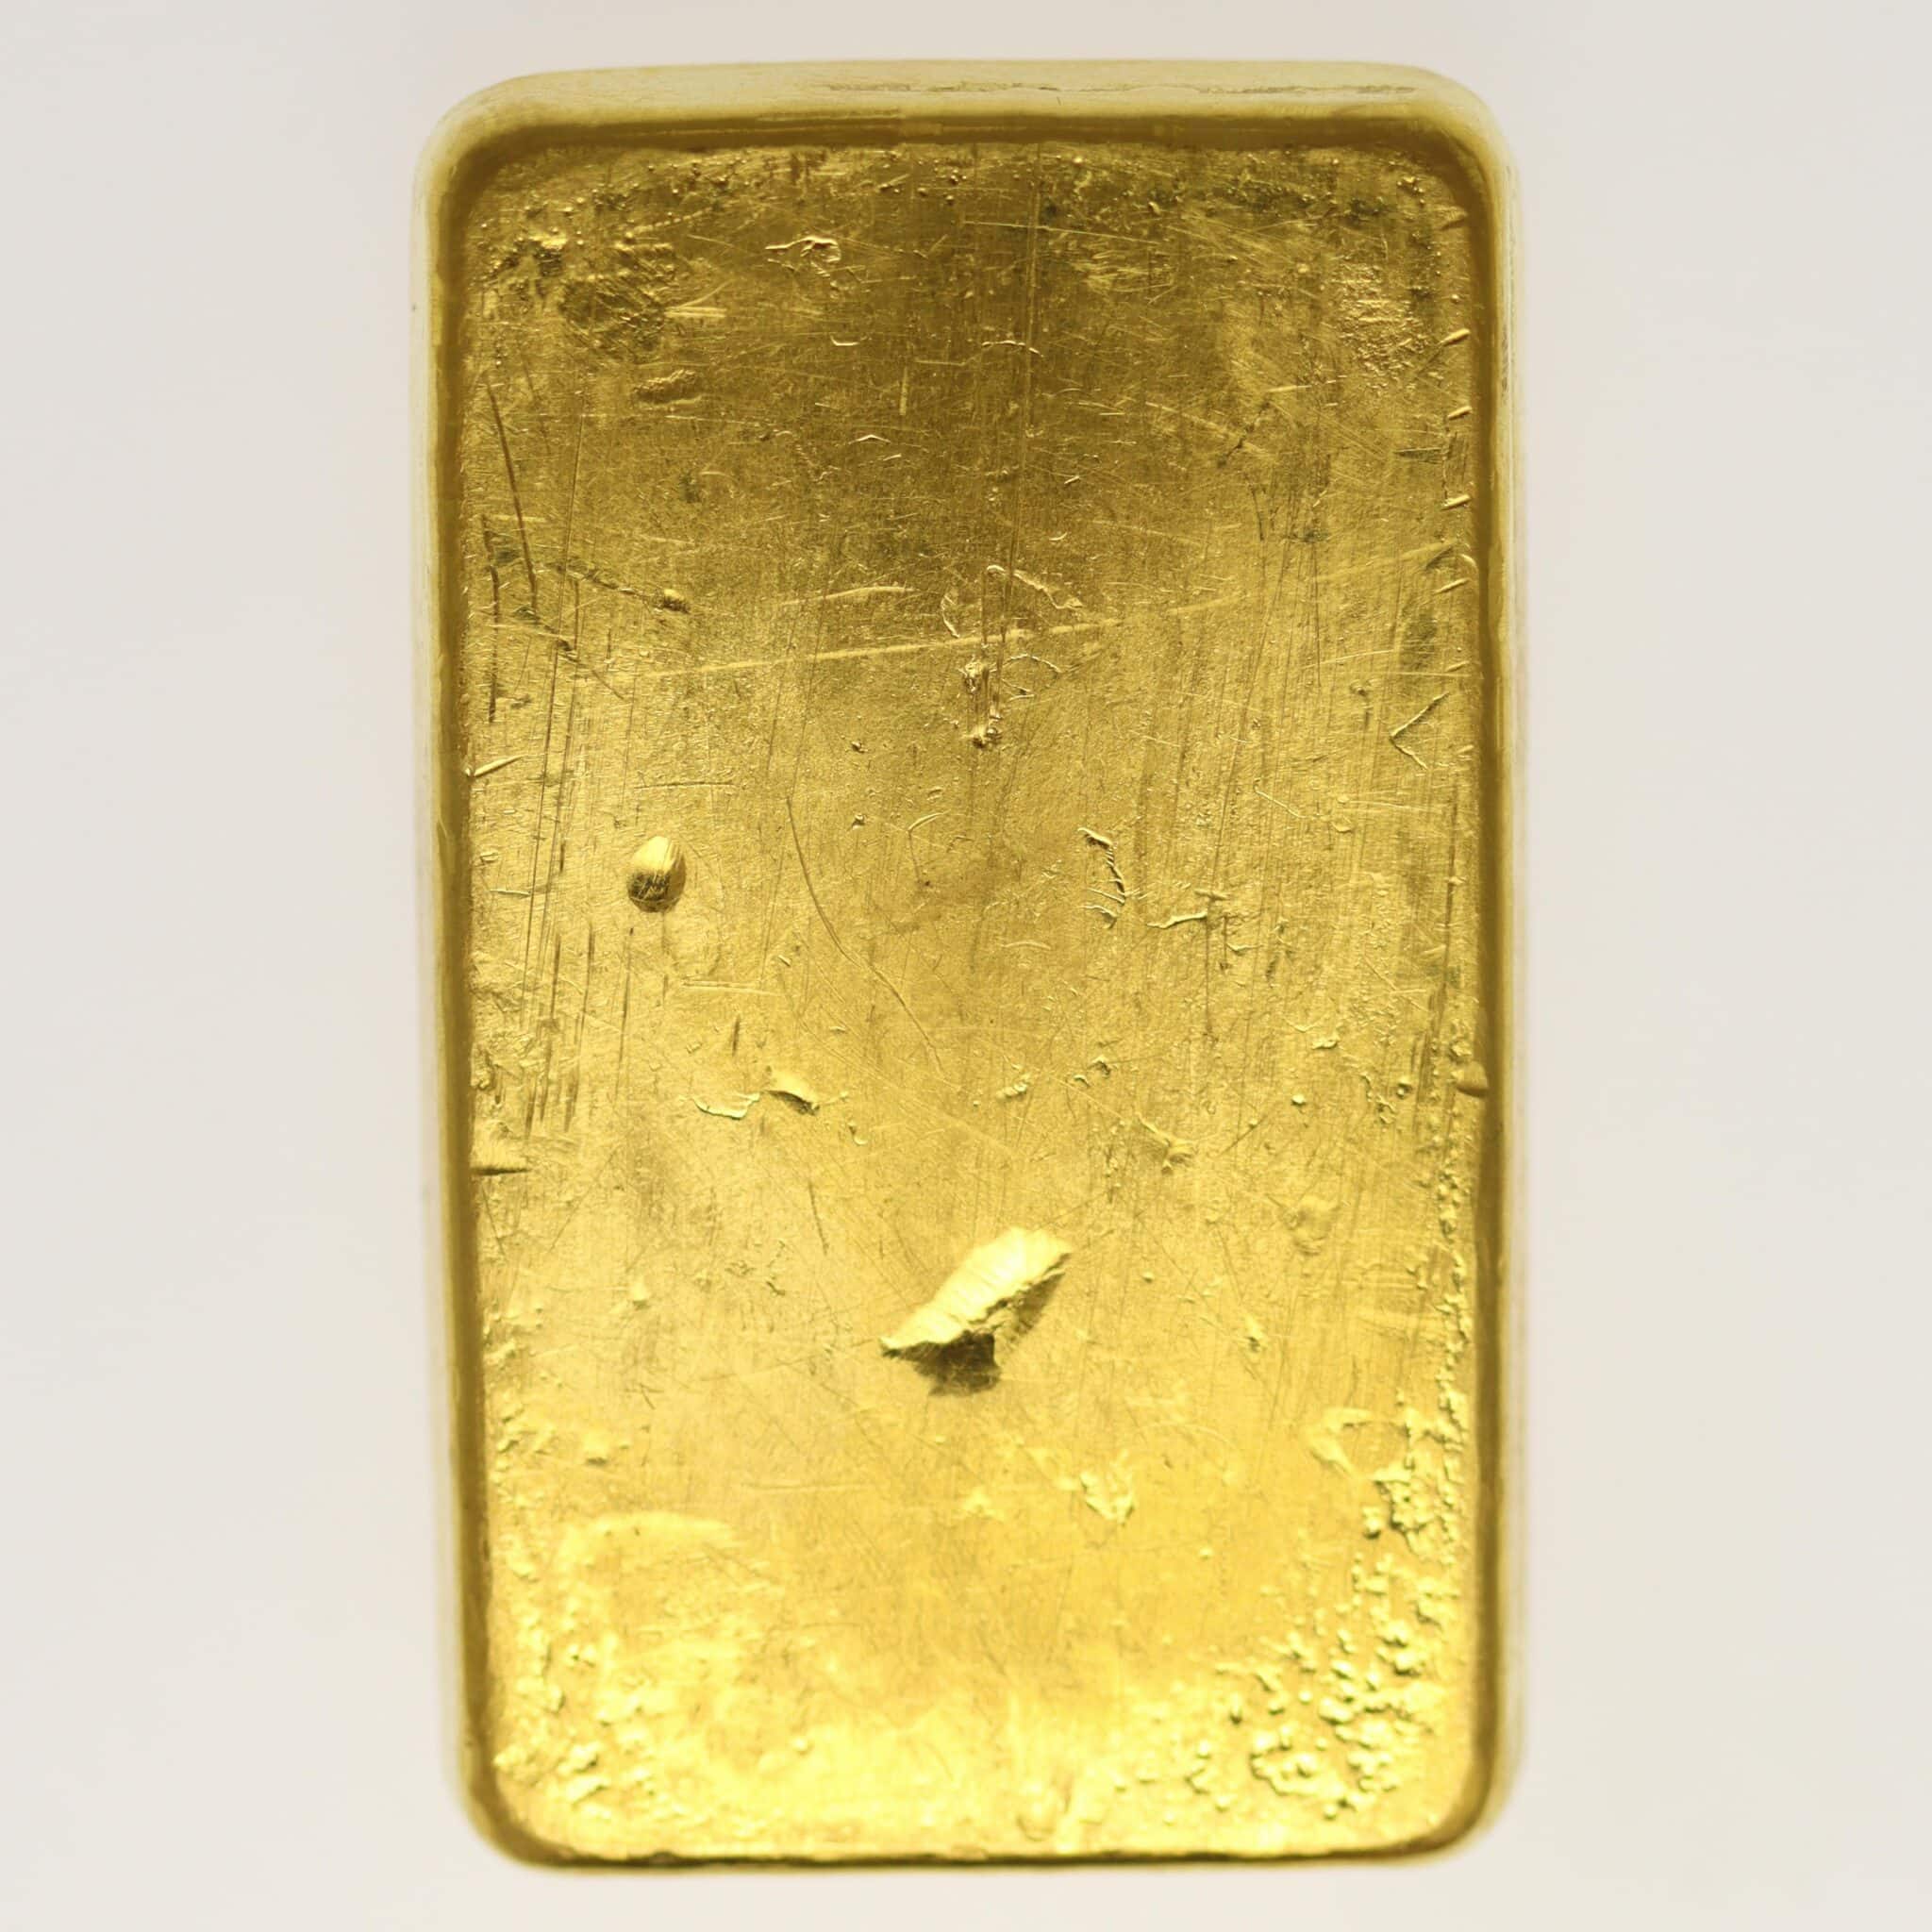 goldbarren - Goldbarren 250 Gramm Schweiz S.B.S. Argor S.A. Chiasso